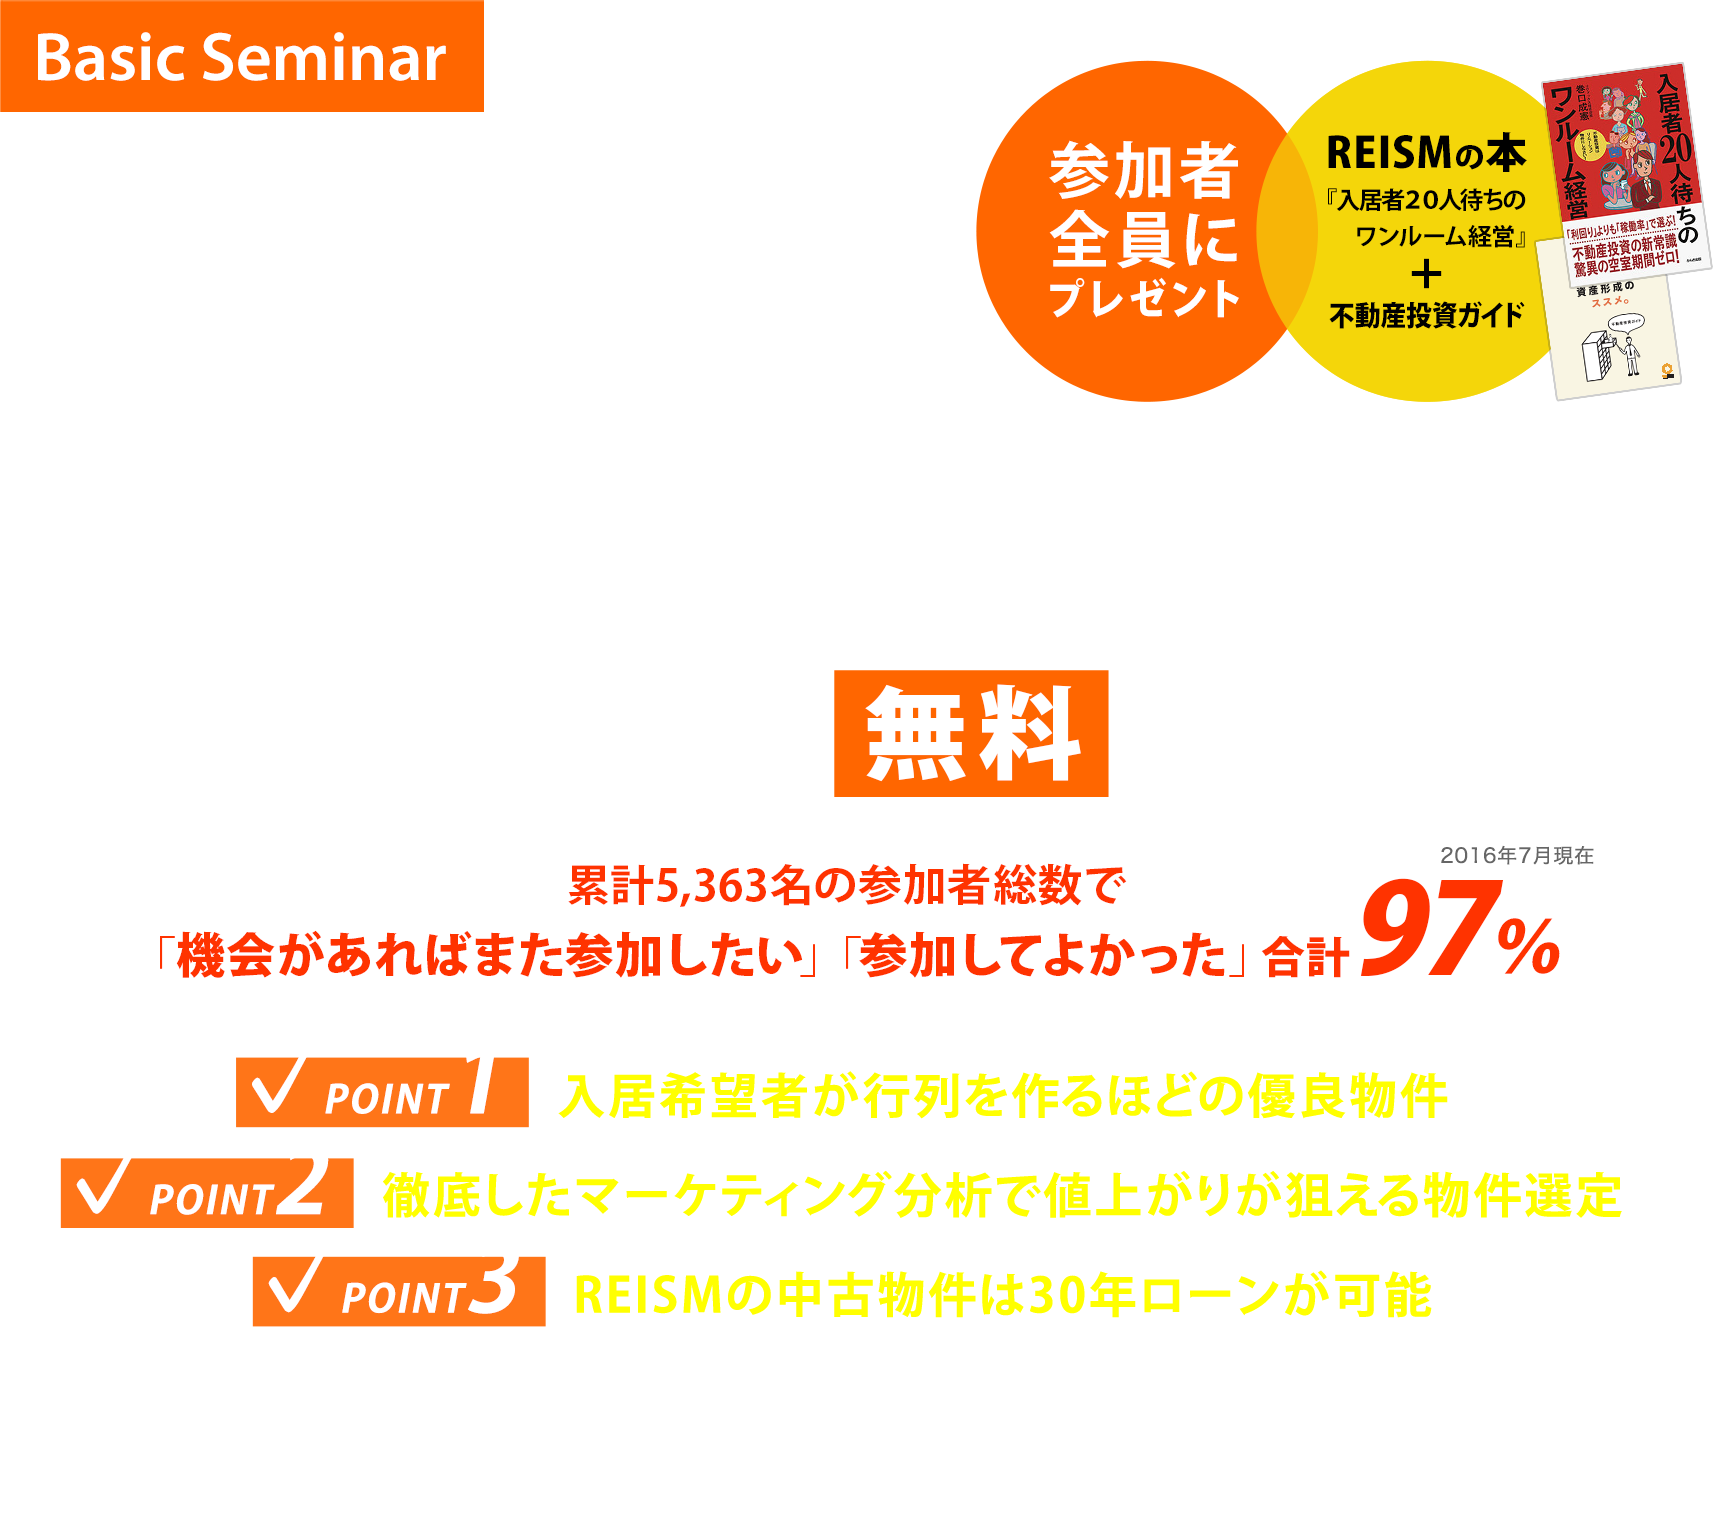 リノベーション・不動産投資セミナー 無料 東京